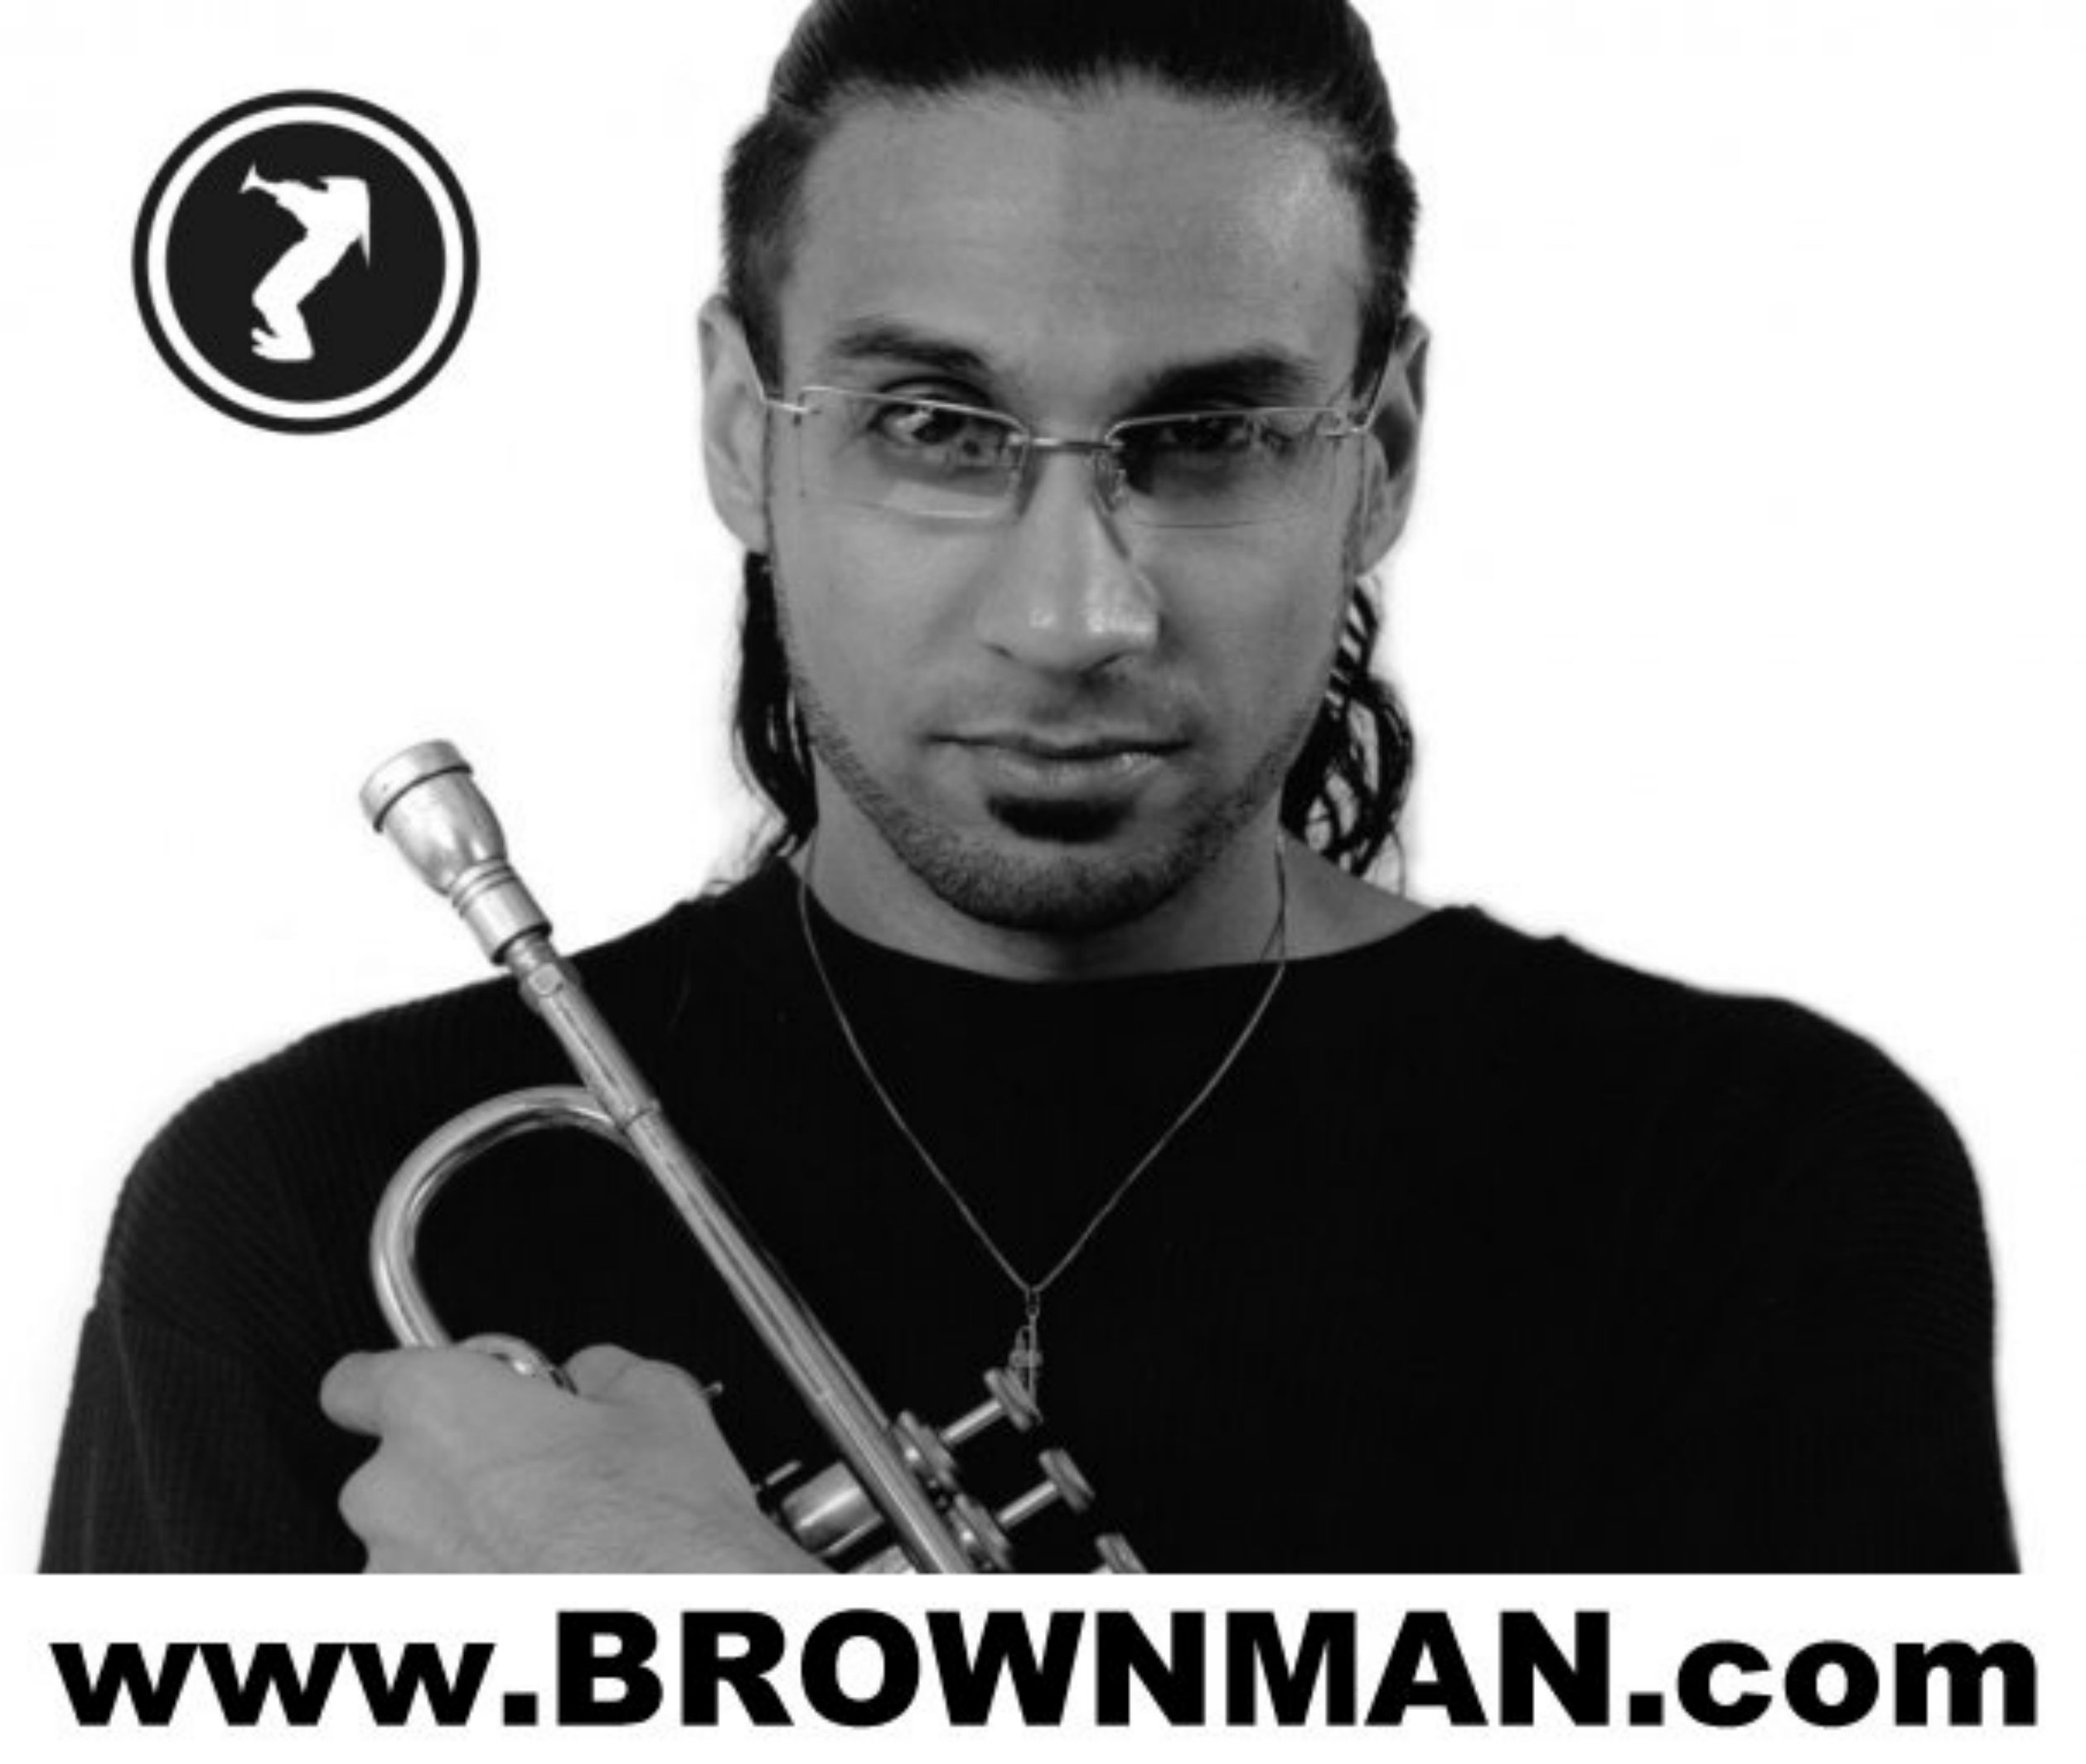 02_Brownman.com